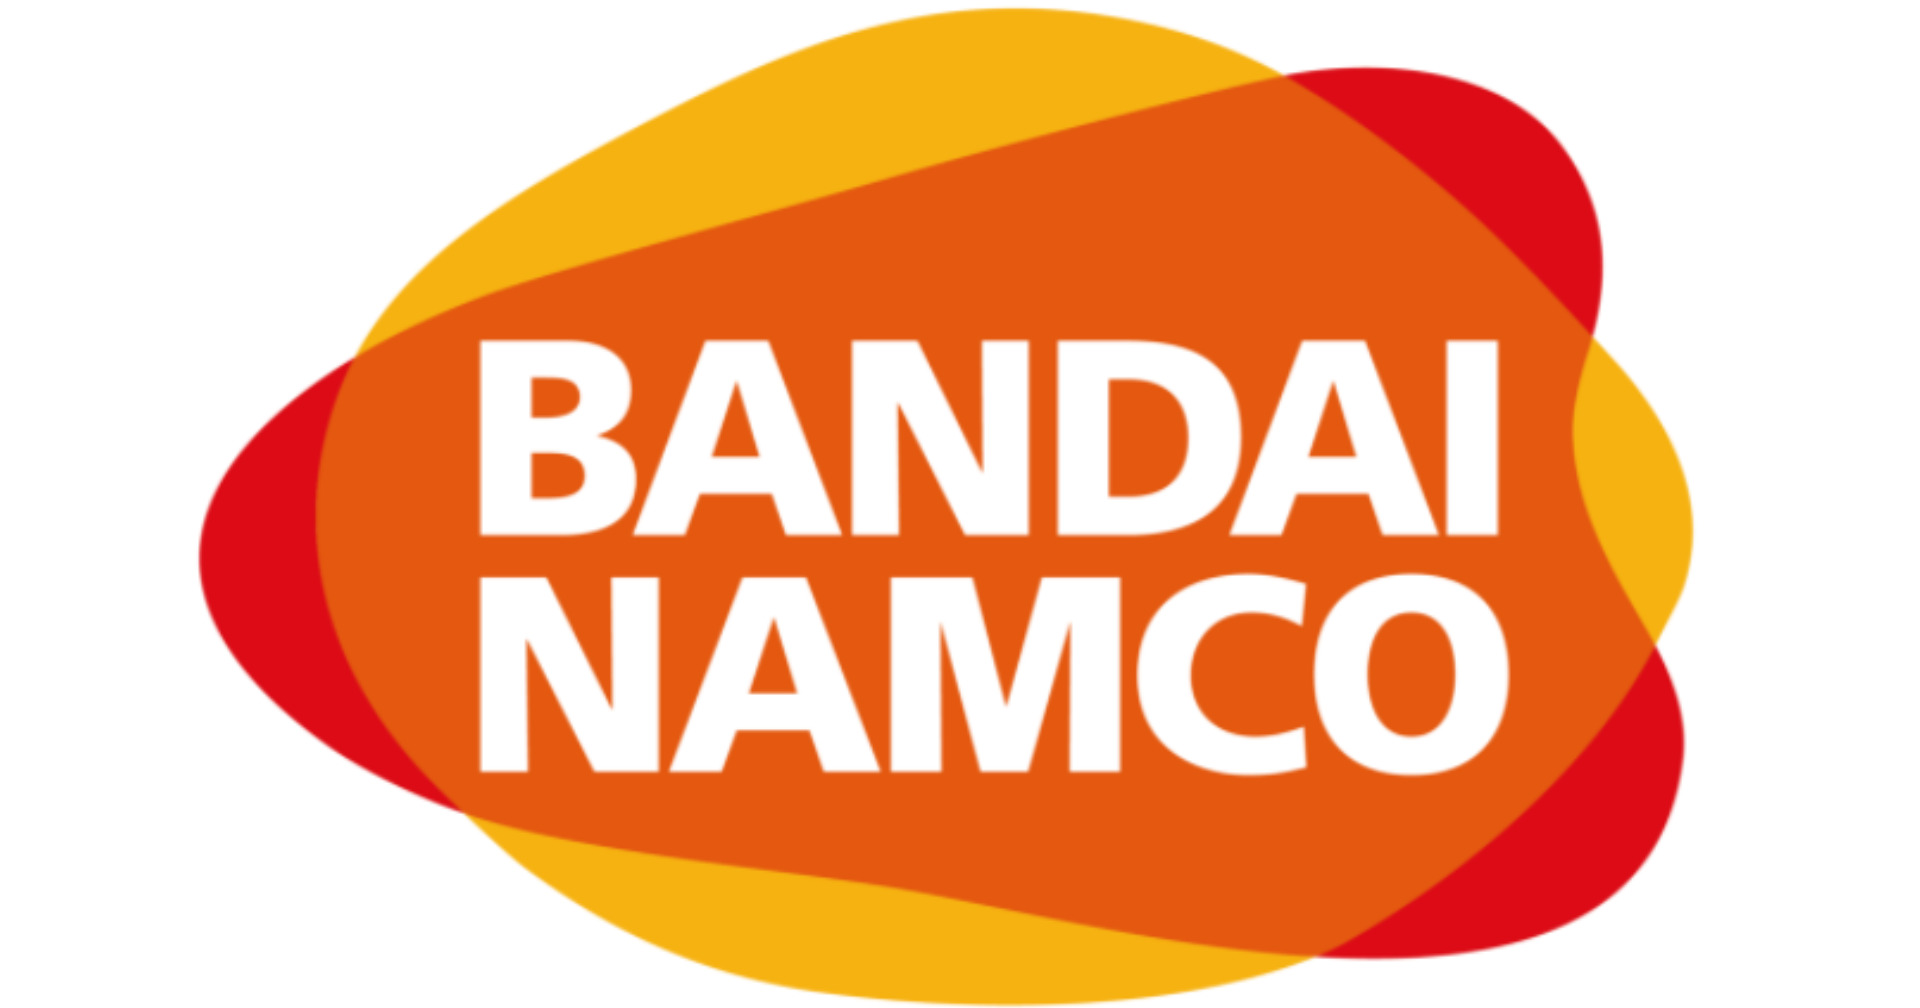 Bandai Namco ทำยอดขายเพิ่มขึ้นจากปีก่อนหน้าถึงเกือบ 50%